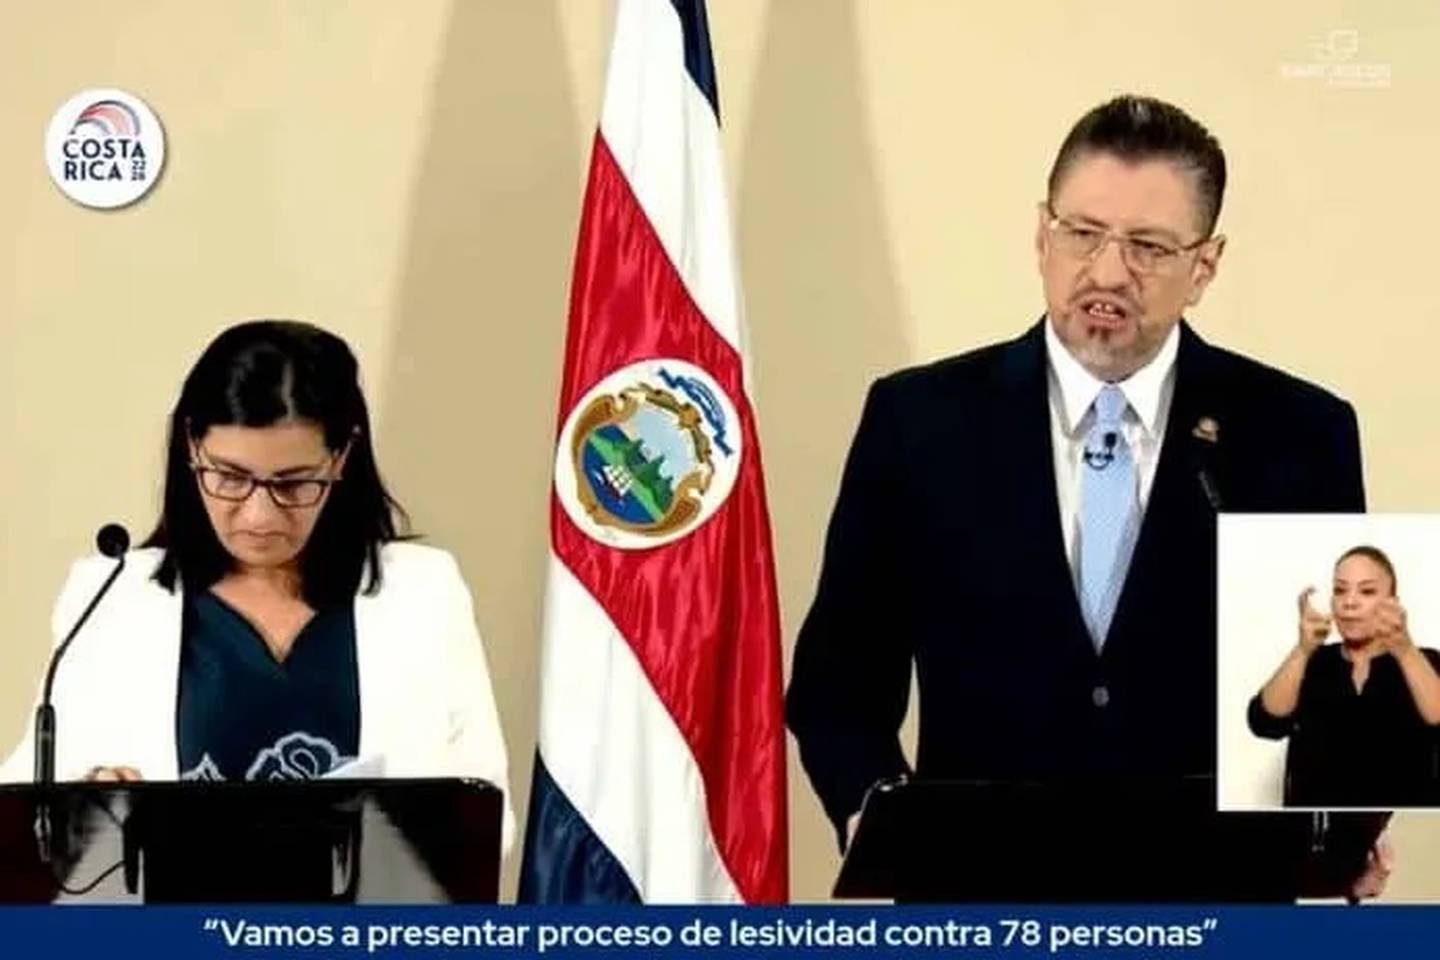 El presidente, Rodrigo Chaves Robles, y la ministra de Educación, Katharina Müller Castro, nombraron a Guillermo Malavassi en el Consejo de Educación